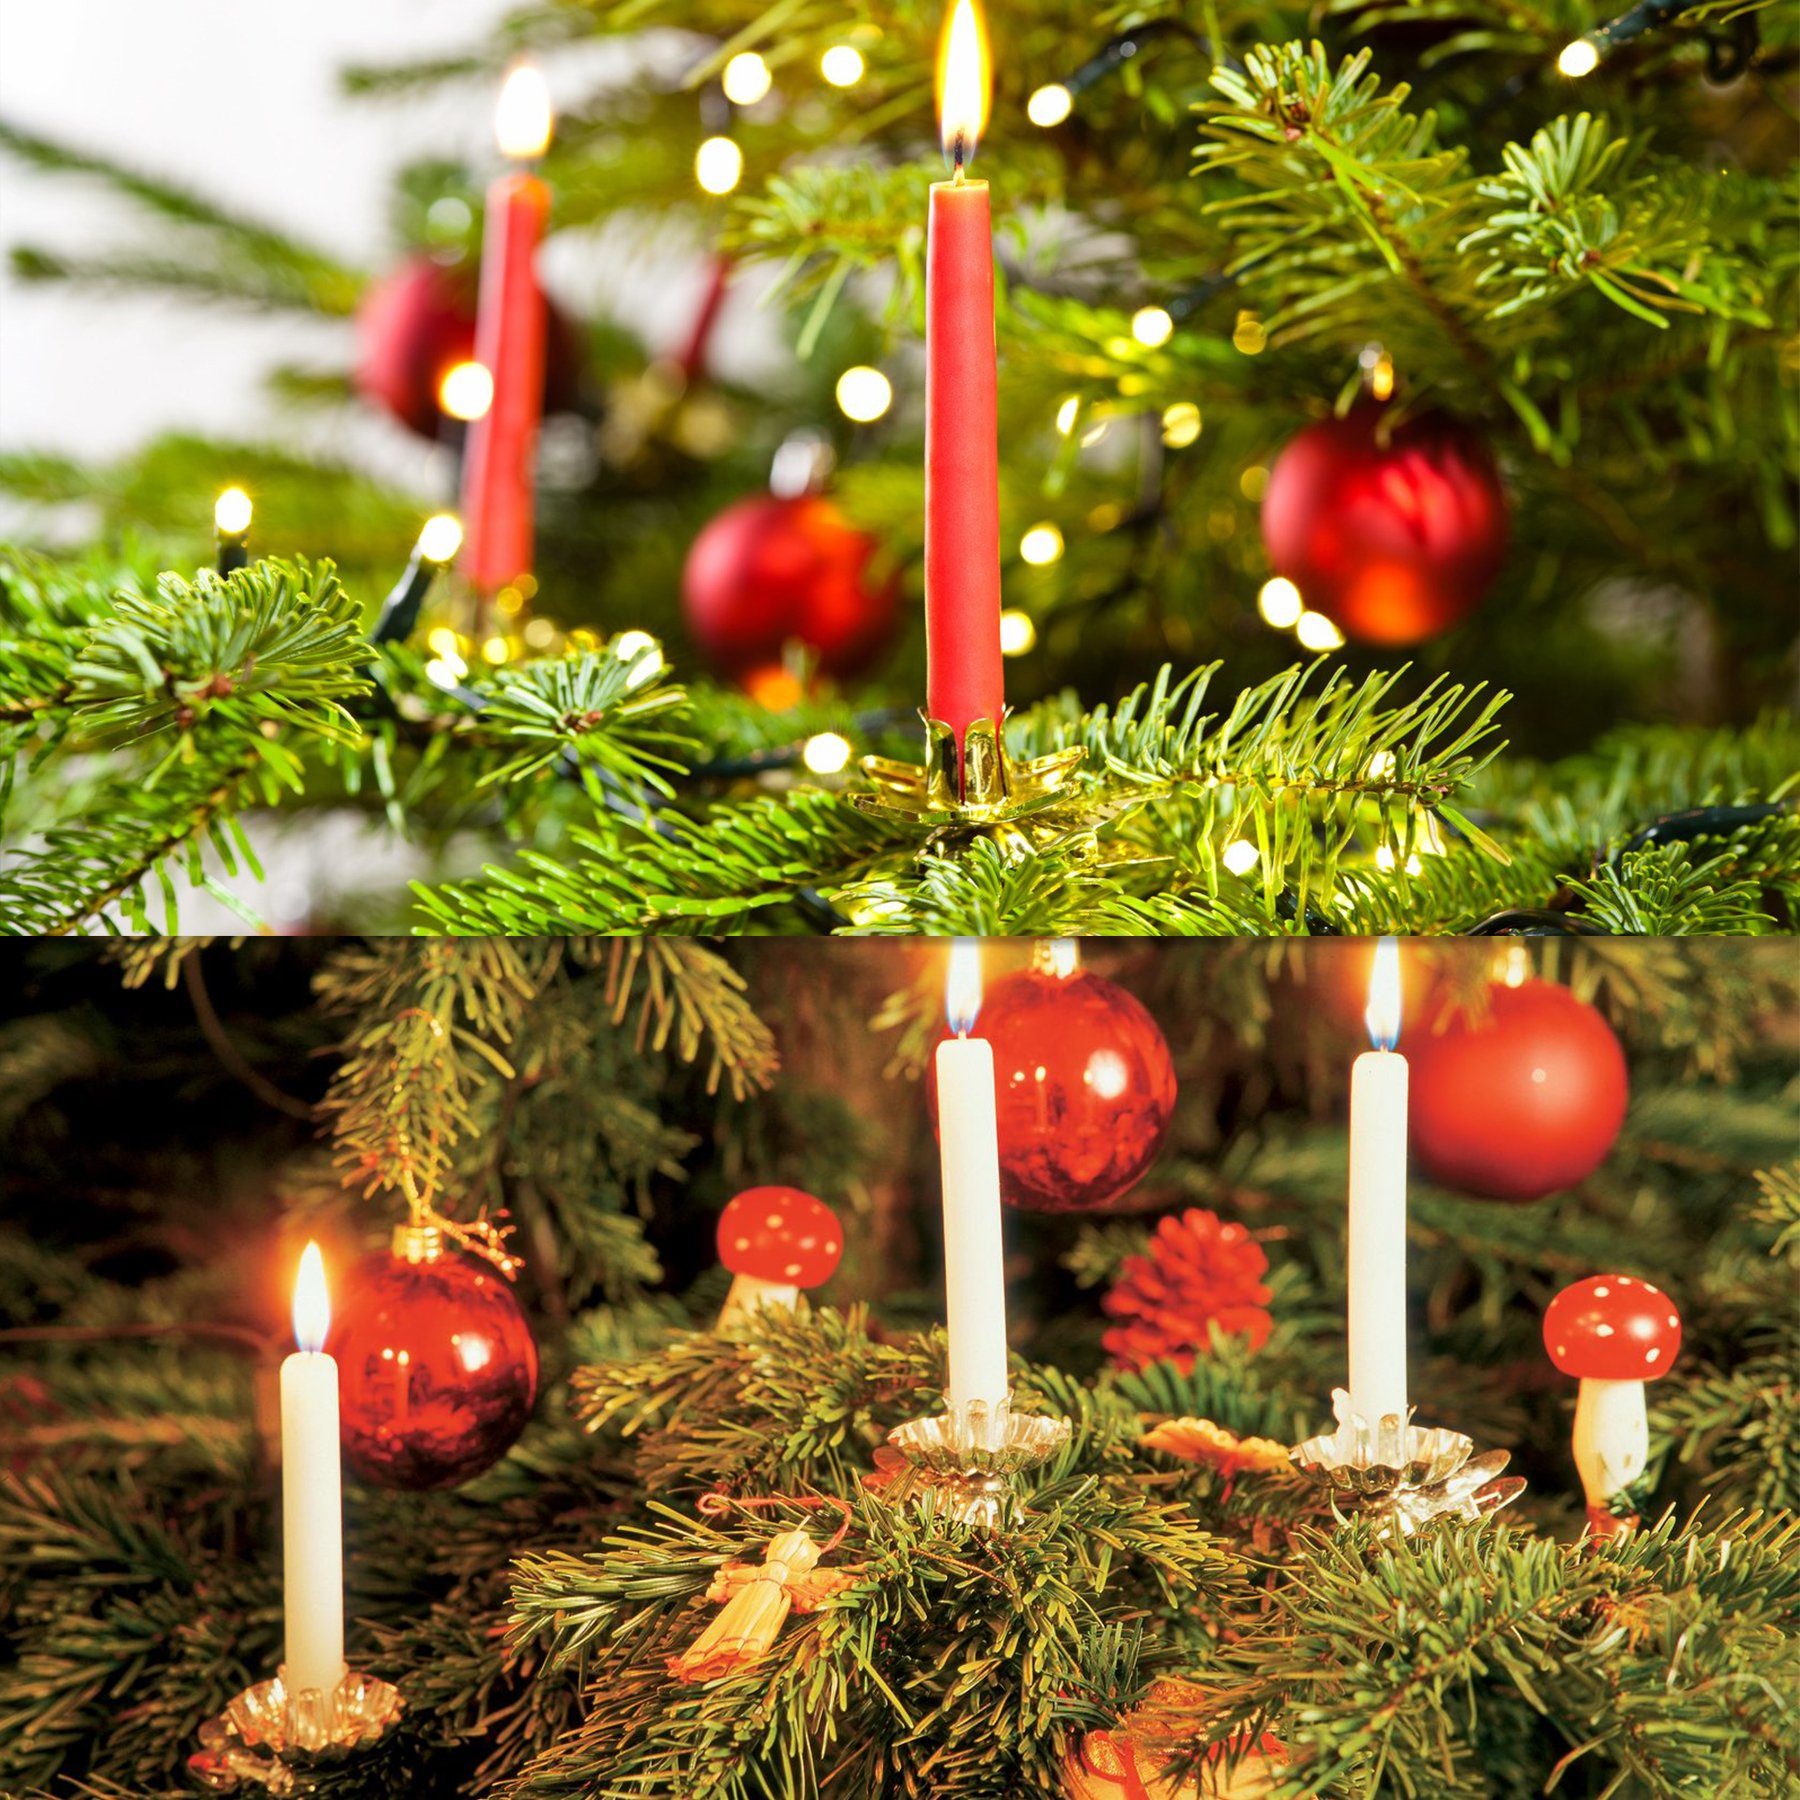 Kerzenzwicker Gold Kerzen Clip CALIYO Metall Weihnachtsbaum Clips (20 mit St), Kerzenständer Kerzenständer 20 Traditionelle